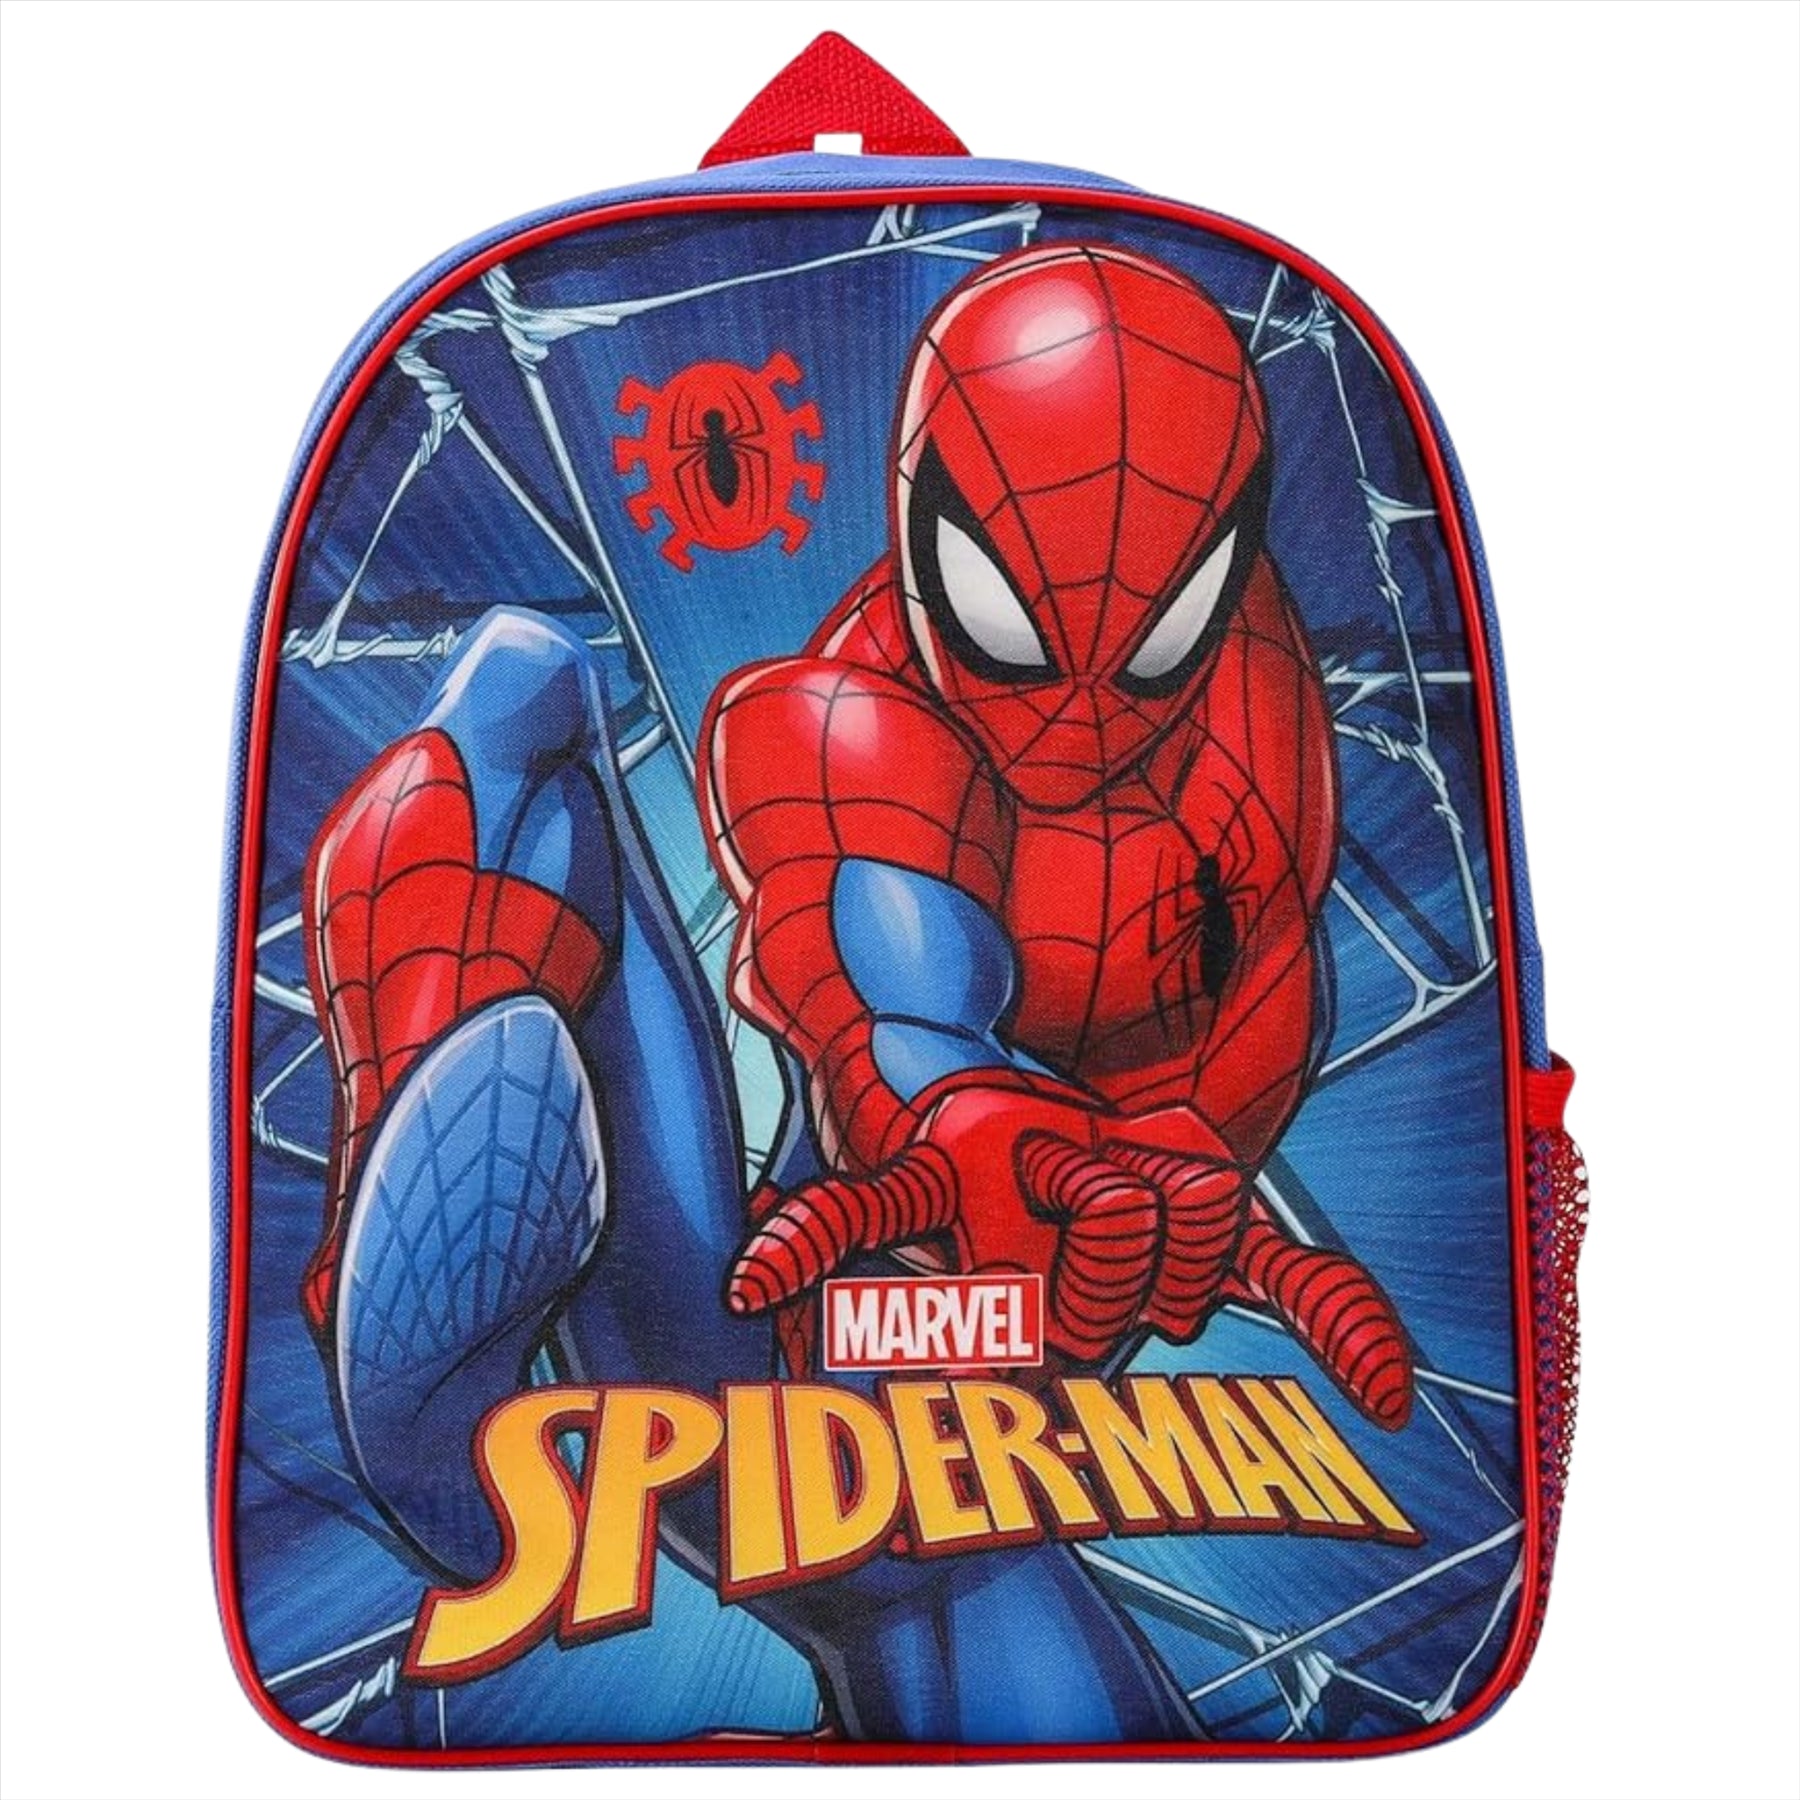 Spiderman Junior Backpack - Kids Character School Bag with Mesh Side Pocket - Toptoys2u